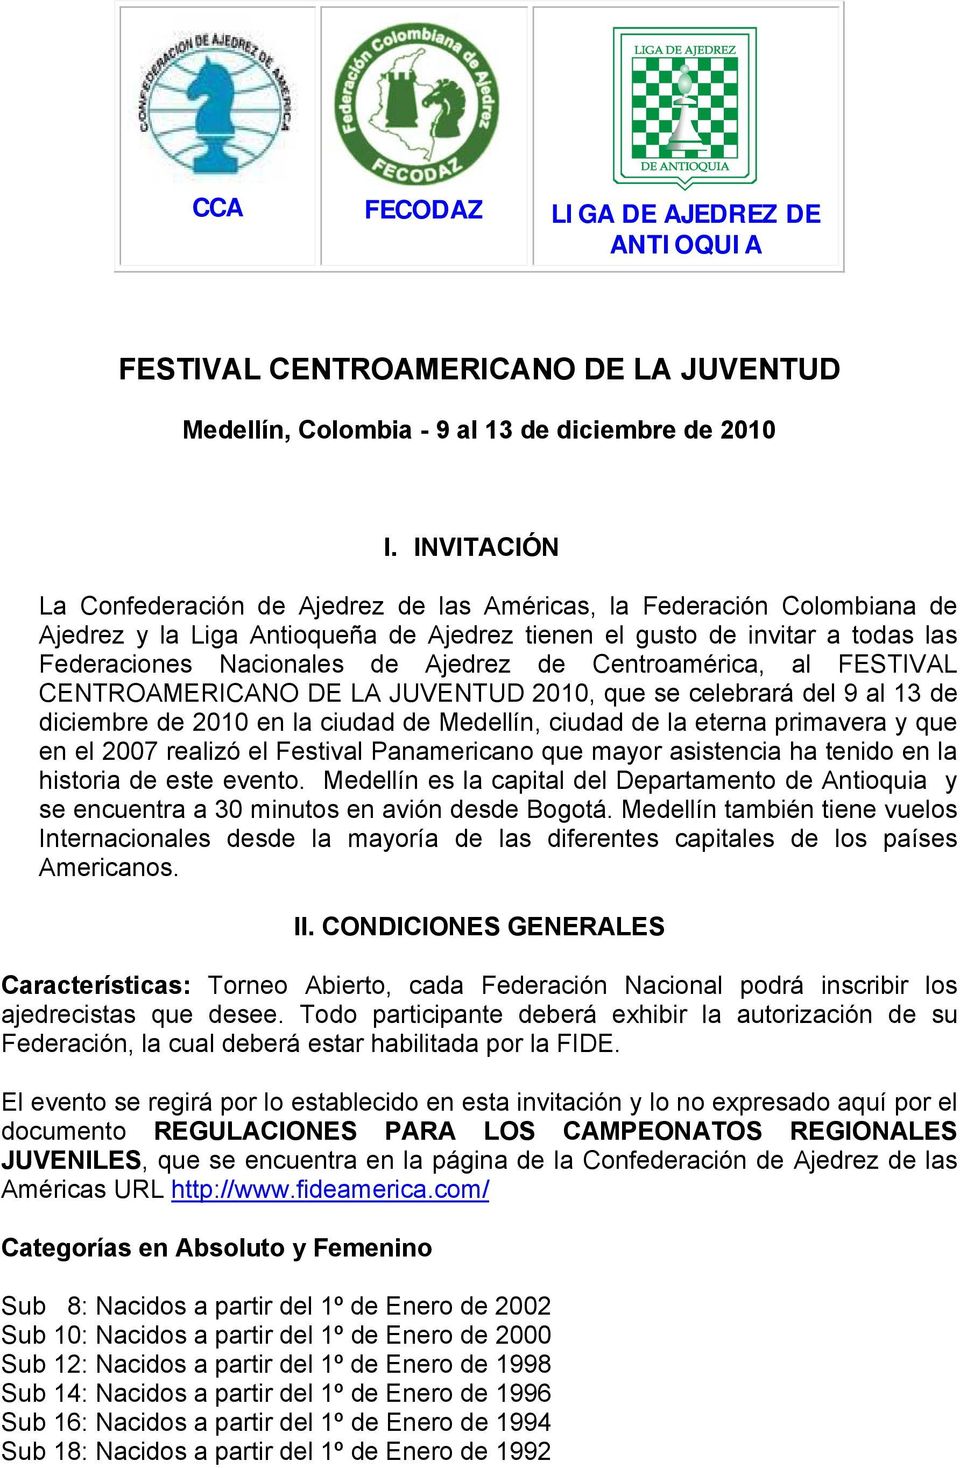 de Centroamérica, al FESTIVAL CENTROAMERICANO DE LA JUVENTUD 2010, que se celebrará del 9 al 13 de diciembre de 2010 en la ciudad de Medellín, ciudad de la eterna primavera y que en el 2007 realizó